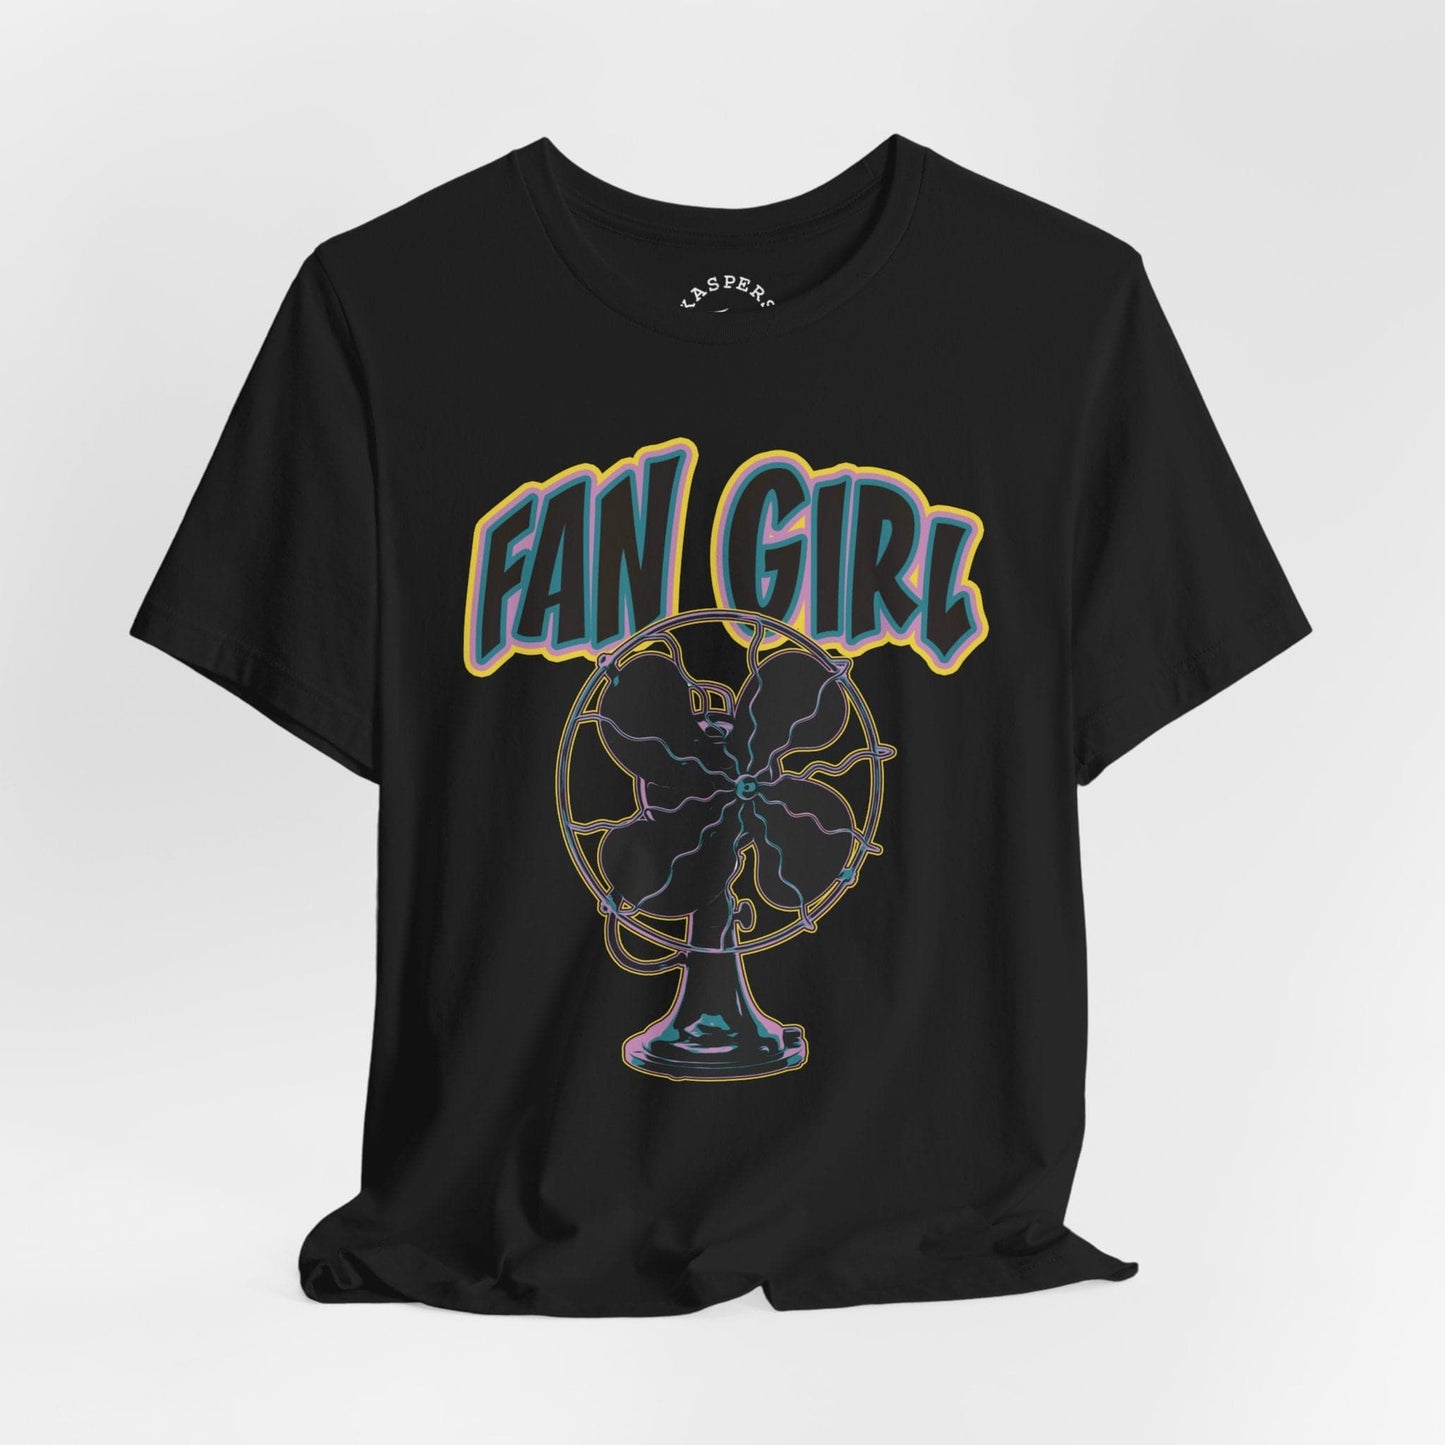 Fan Girl T-Shirt